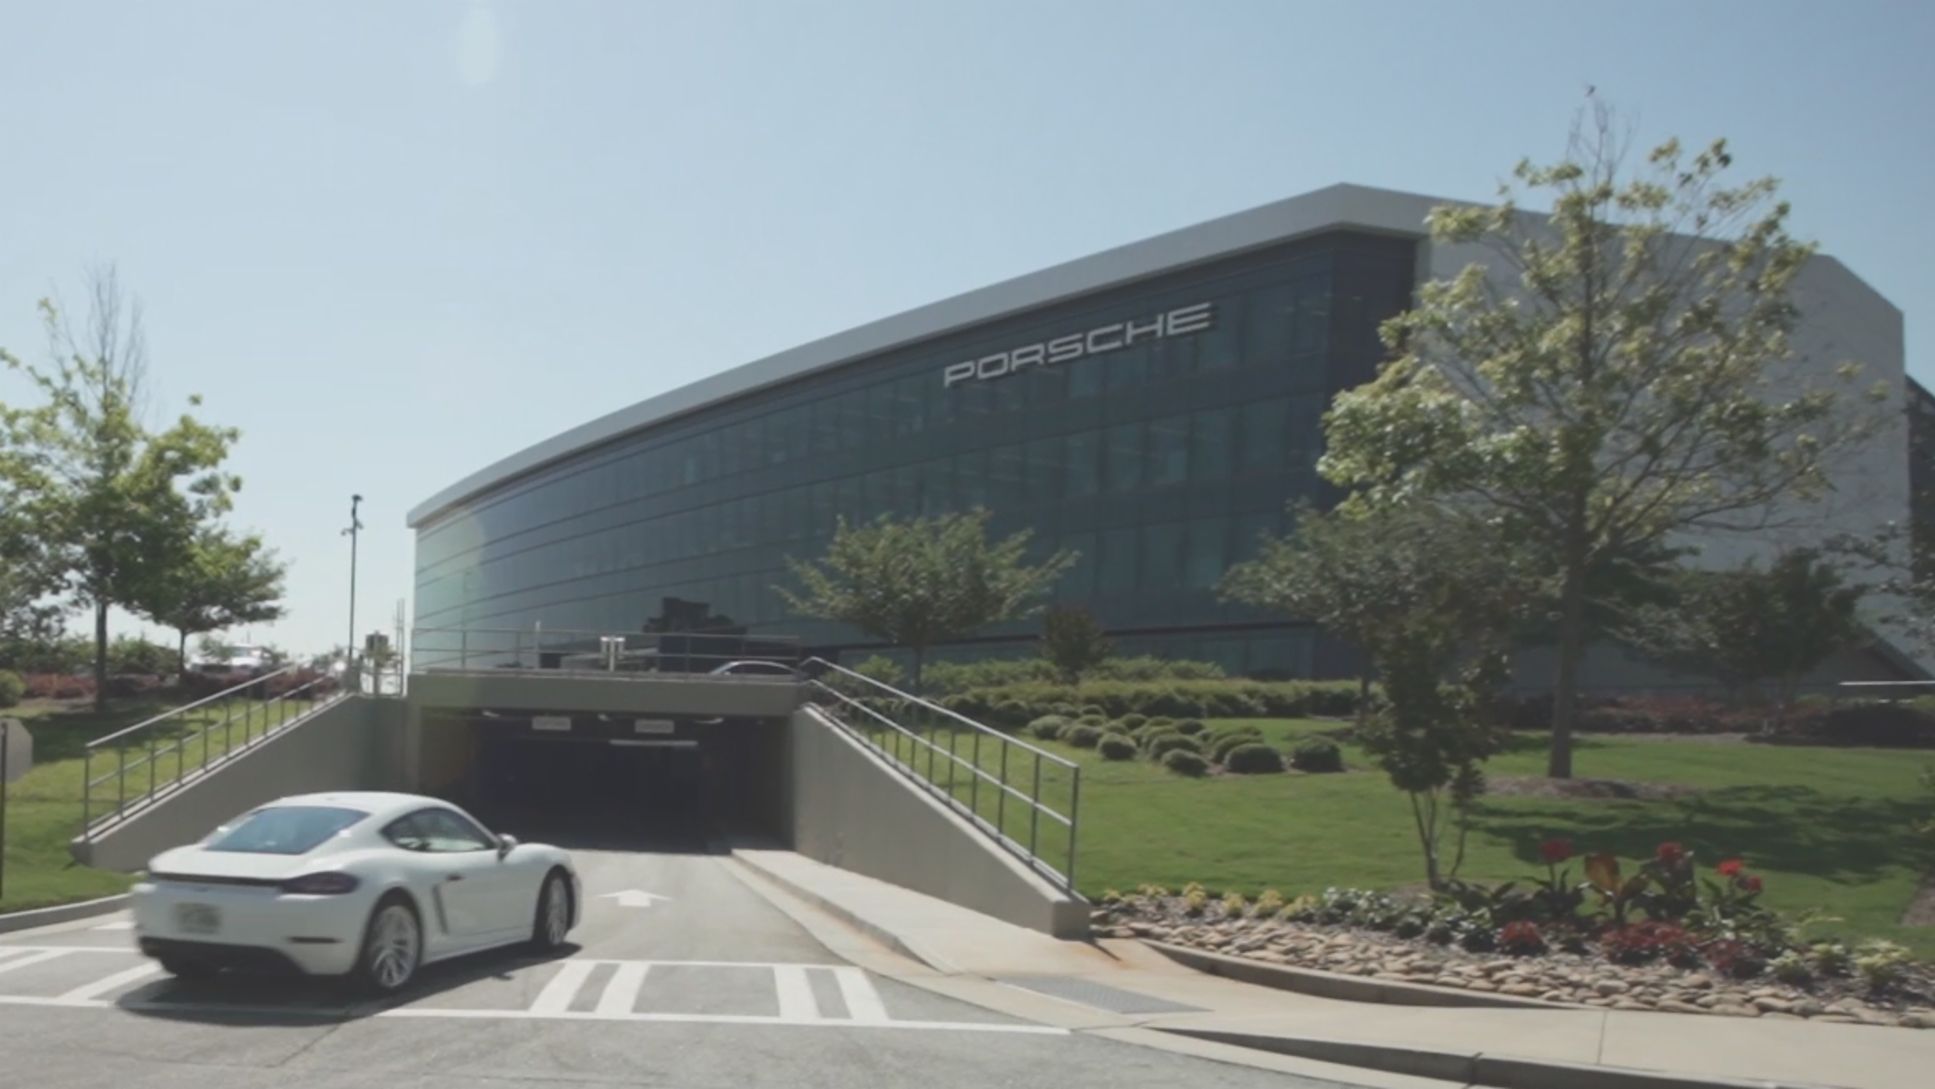 Büro Atlanta, 2019, Porsche Consulting GmbH